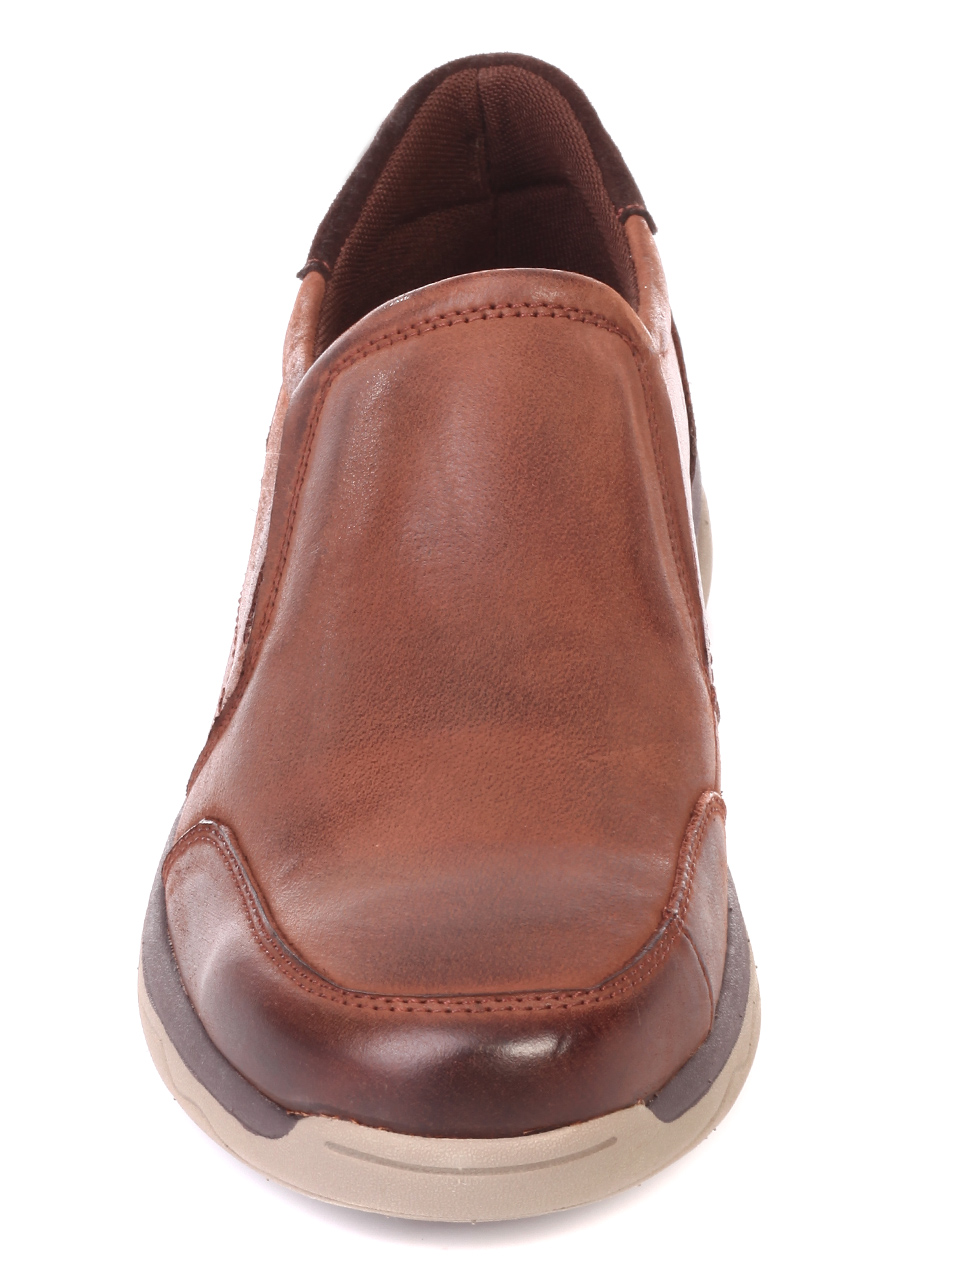 Ежедневни мъжки обувки от естествена кожа 7N-19766 coffee